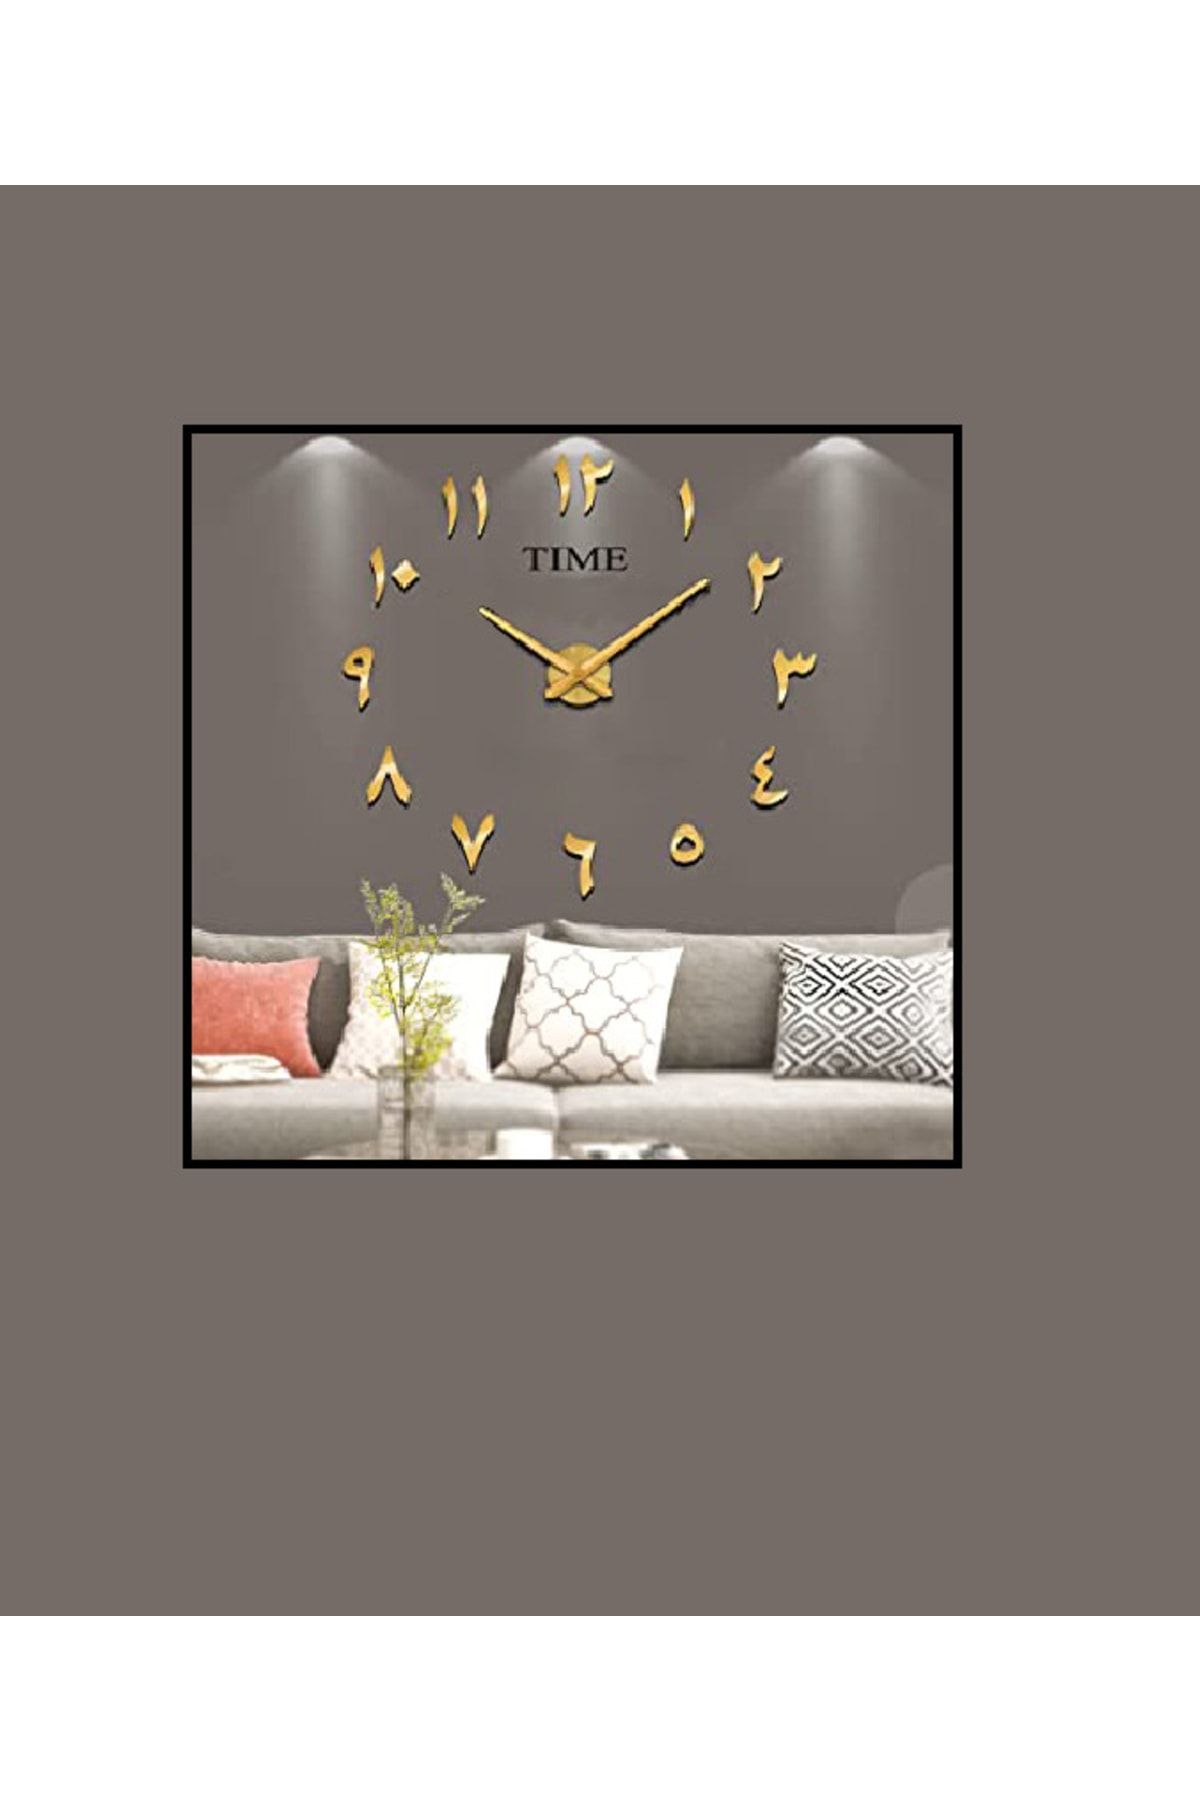 MİNAY HOME 3d Duvar Saati Arapça ???? Rakamlar Özel Tasarım Duvar Saati ( Patentli ) Altın